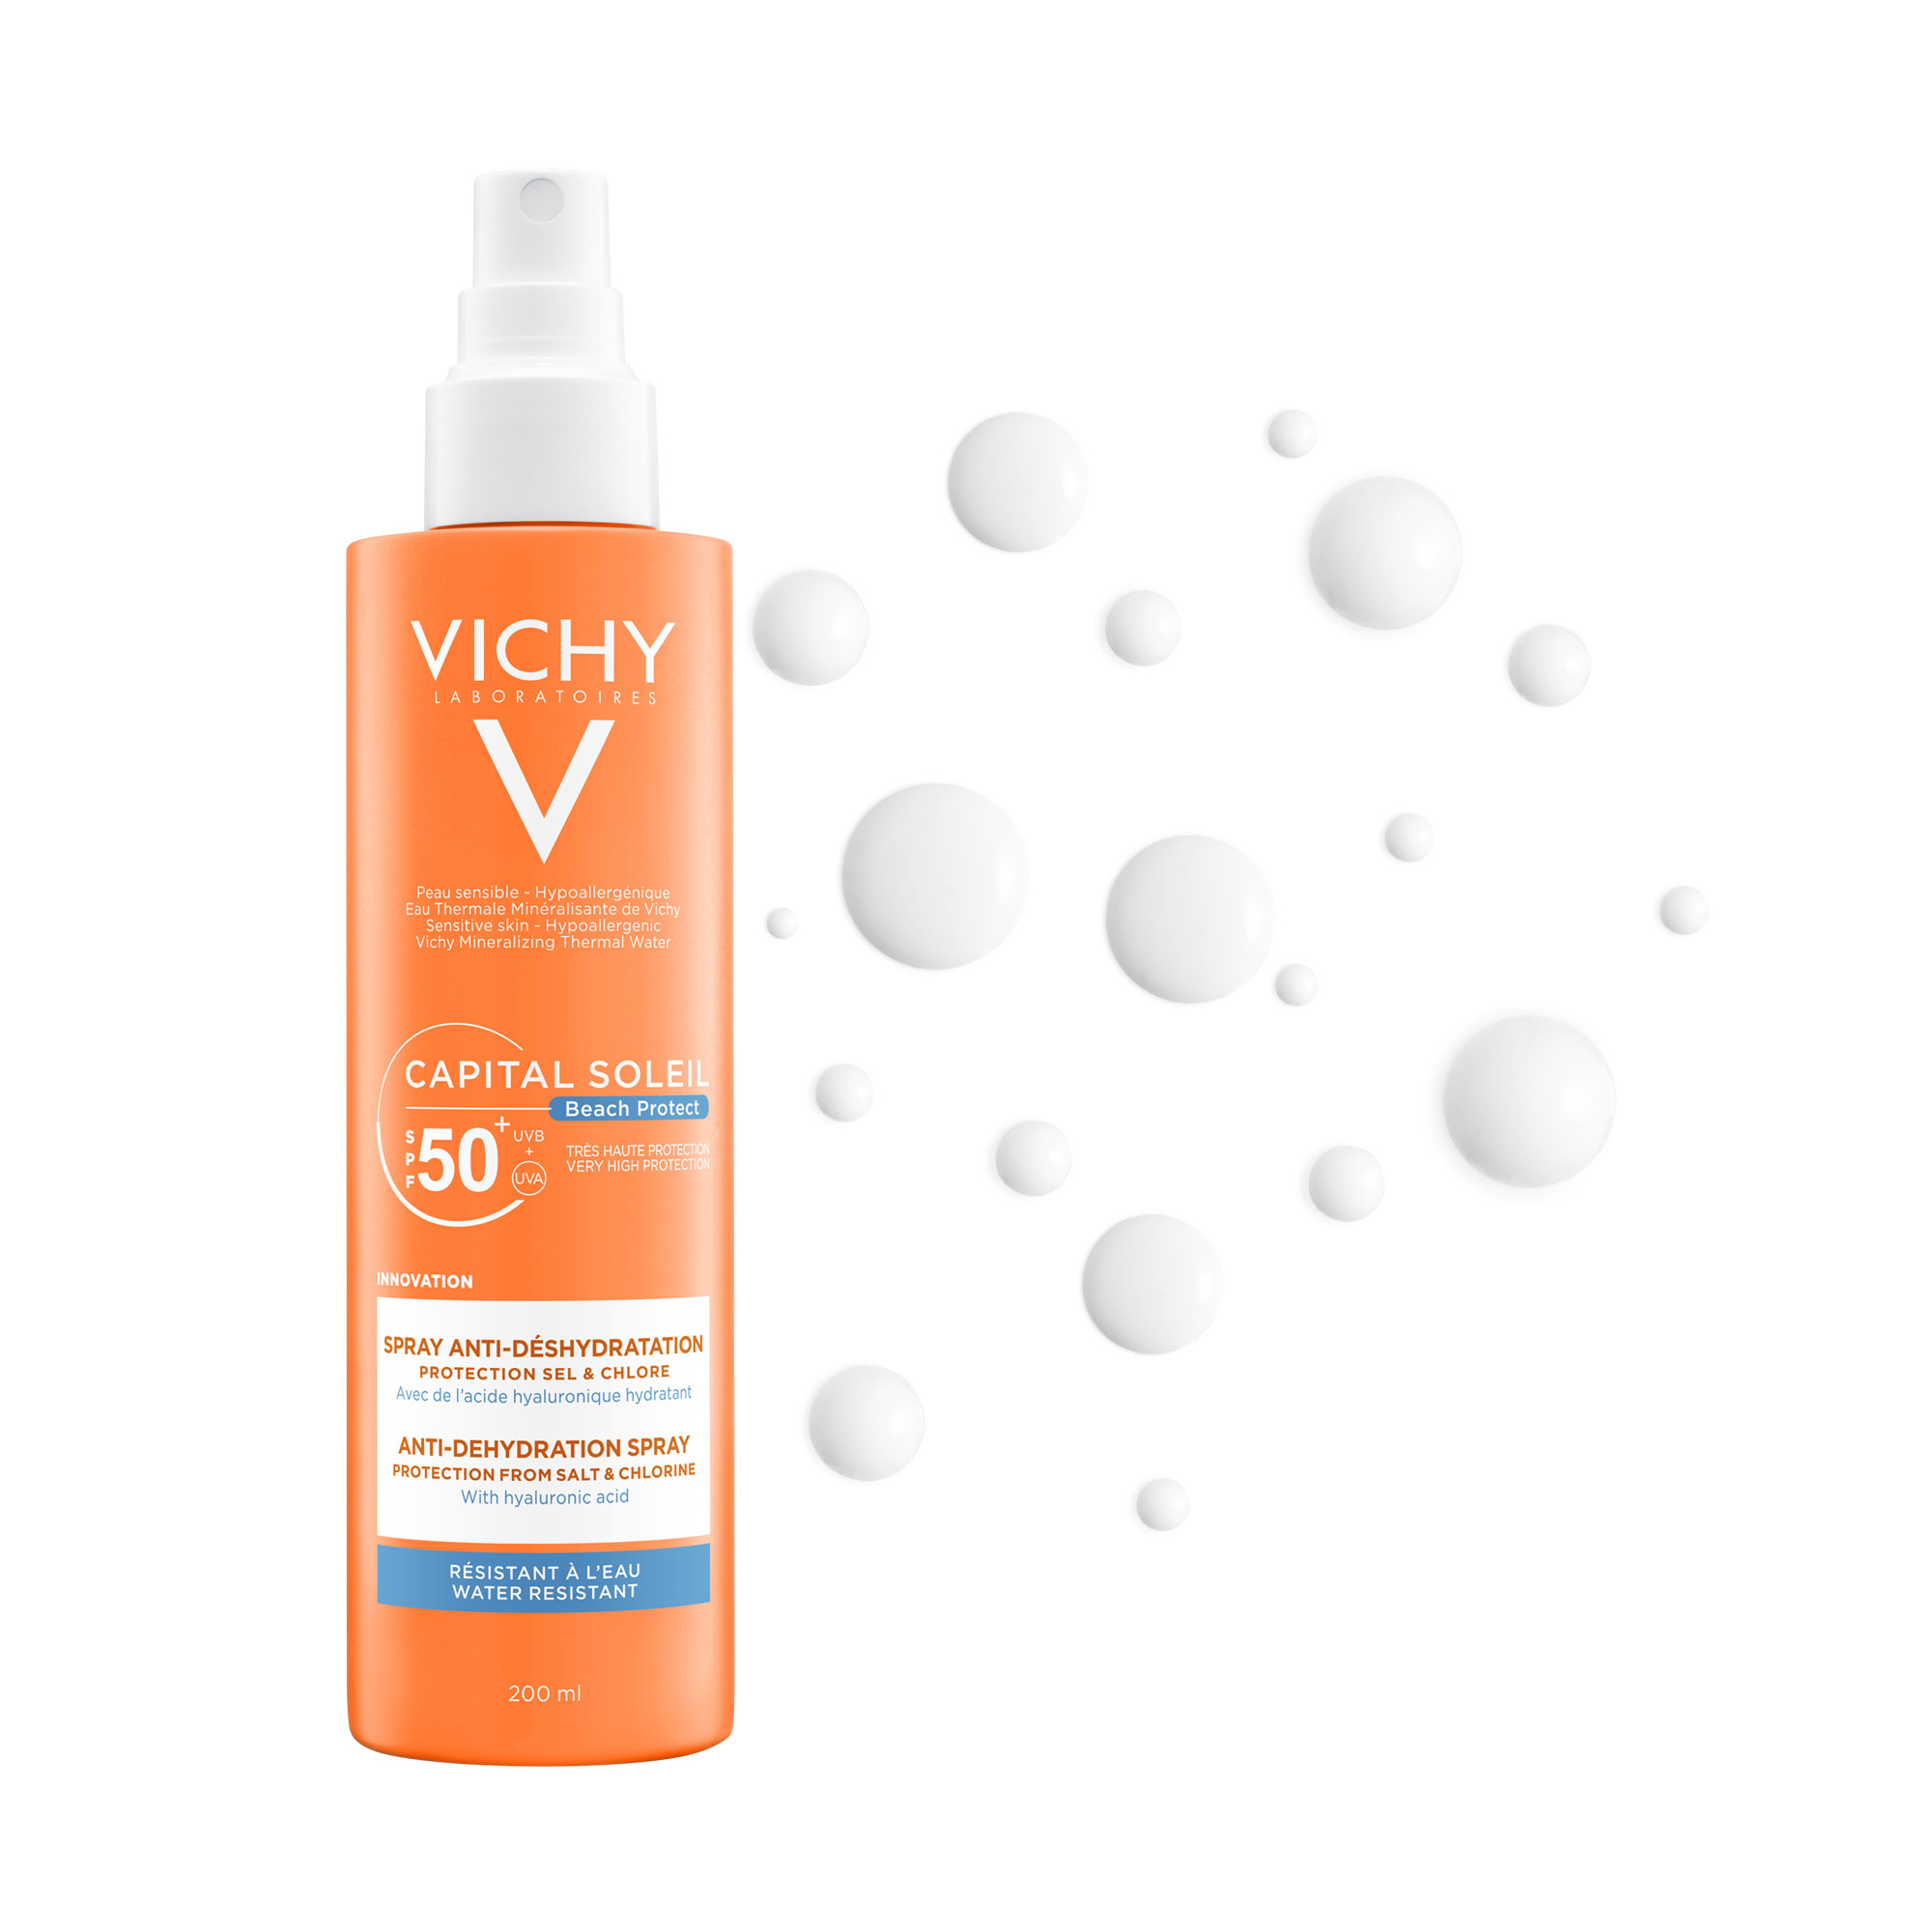 Vichy Capital Soleil Beach Protect Hidratáló napvédő spray extra védelemmel a só és klór hatásai ellen SPF50+ 200ml képe